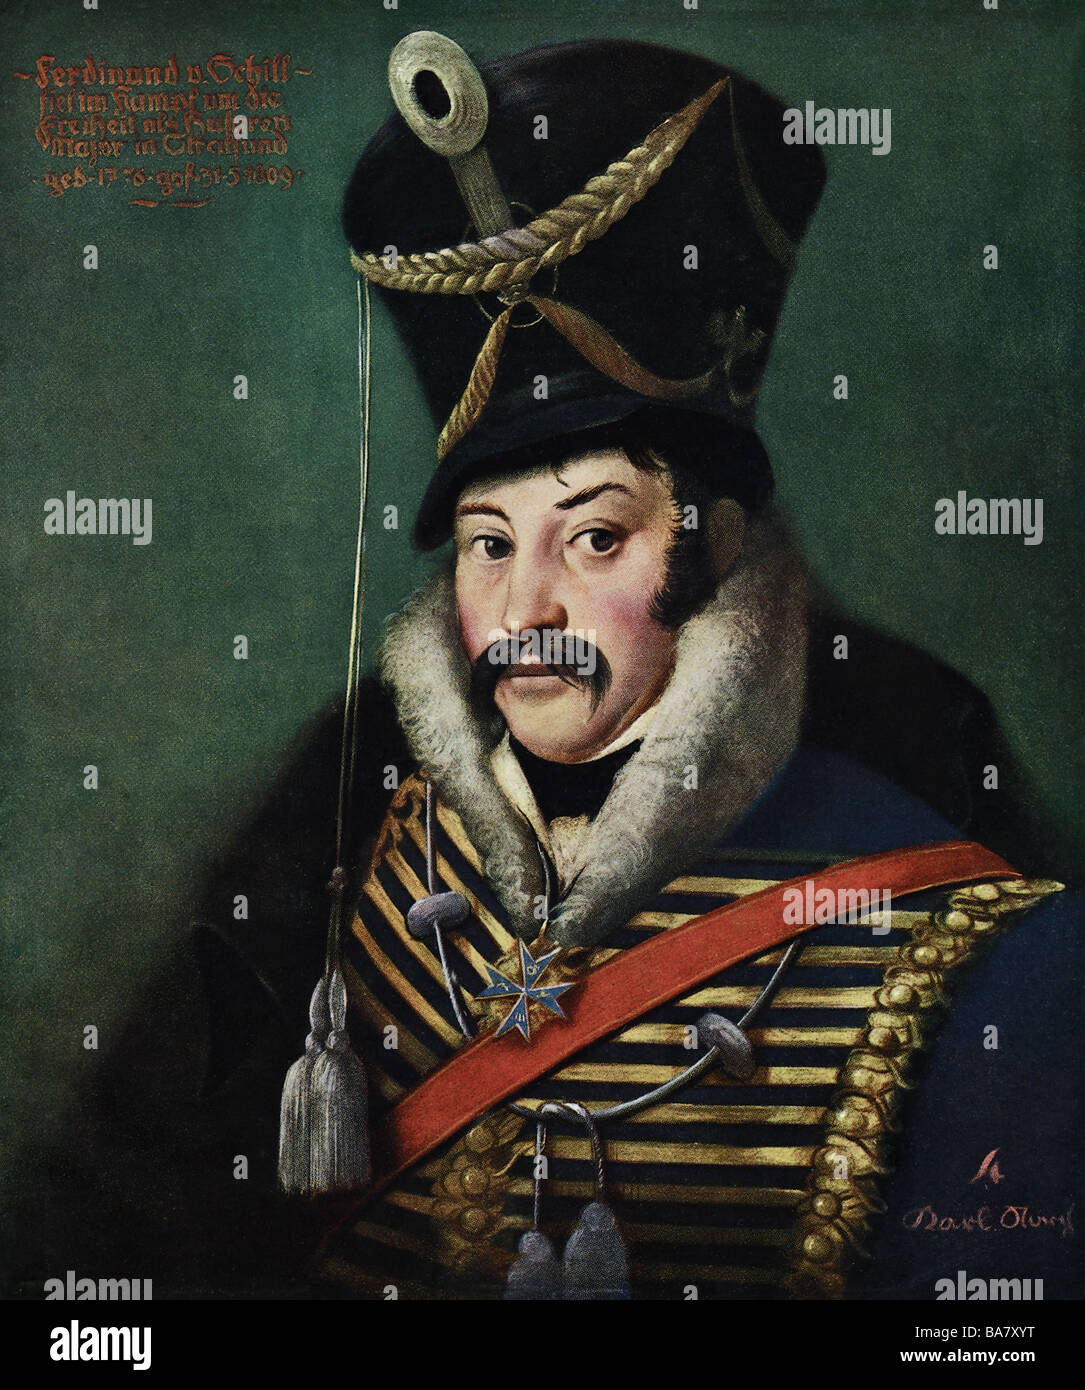 Schill, Ferdinand von, 6.1.1776 - 31.5.1809, officier militaire prussien, portrait, imprimé après la peinture de Karl Storch, XIXe siècle, Banque D'Images